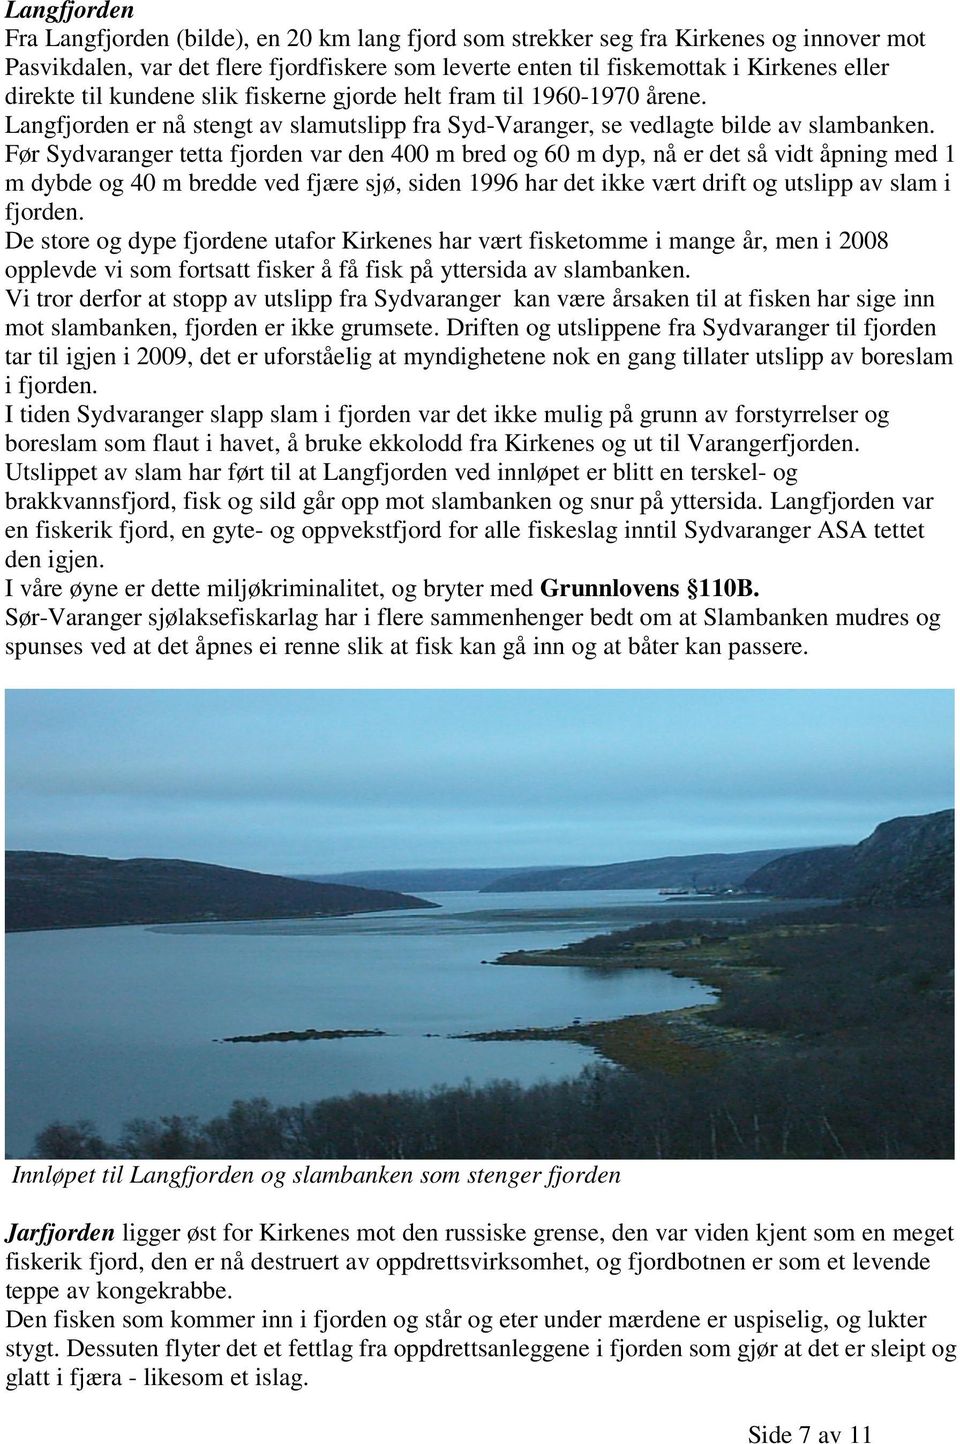 Før Sydvaranger tetta fjorden var den 400 m bred og 60 m dyp, nå er det så vidt åpning med 1 m dybde og 40 m bredde ved fjære sjø, siden 1996 har det ikke vært drift og utslipp av slam i fjorden.